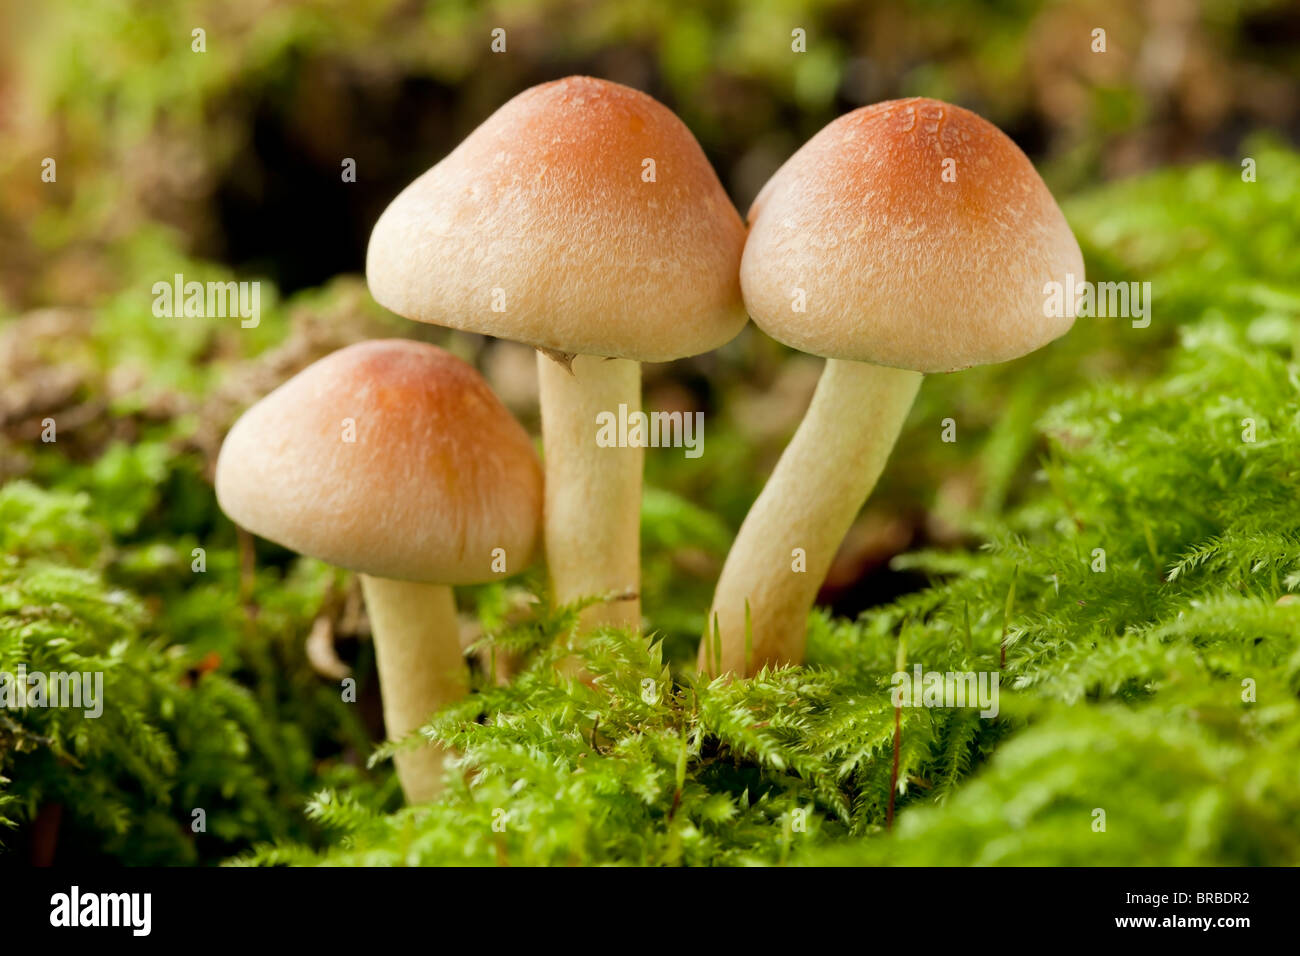 Scaly Rustgill mushroom (Gymnopilus sapineus) Stock Photo